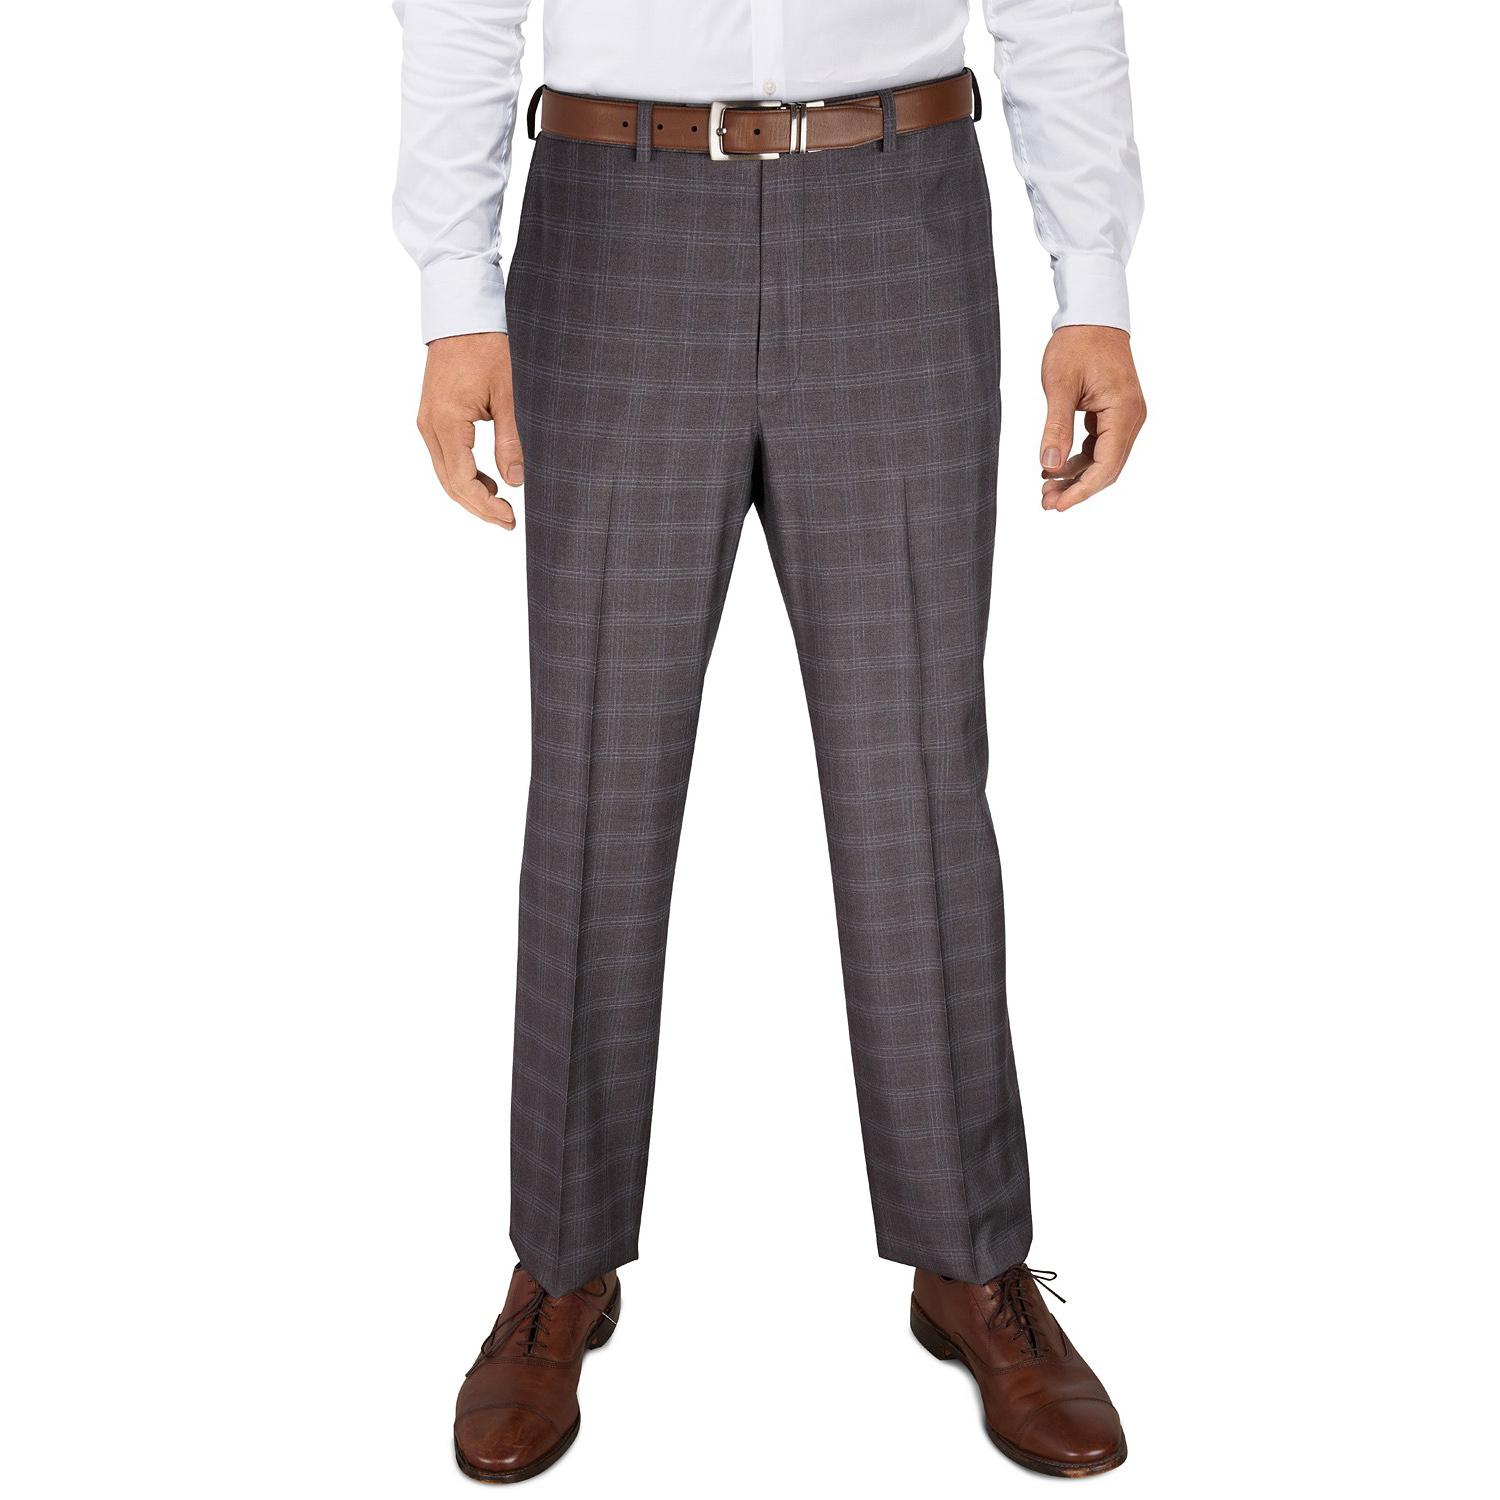 Ralph Lauren Mens Pattern Classic Fit Dress Pants for $14.93